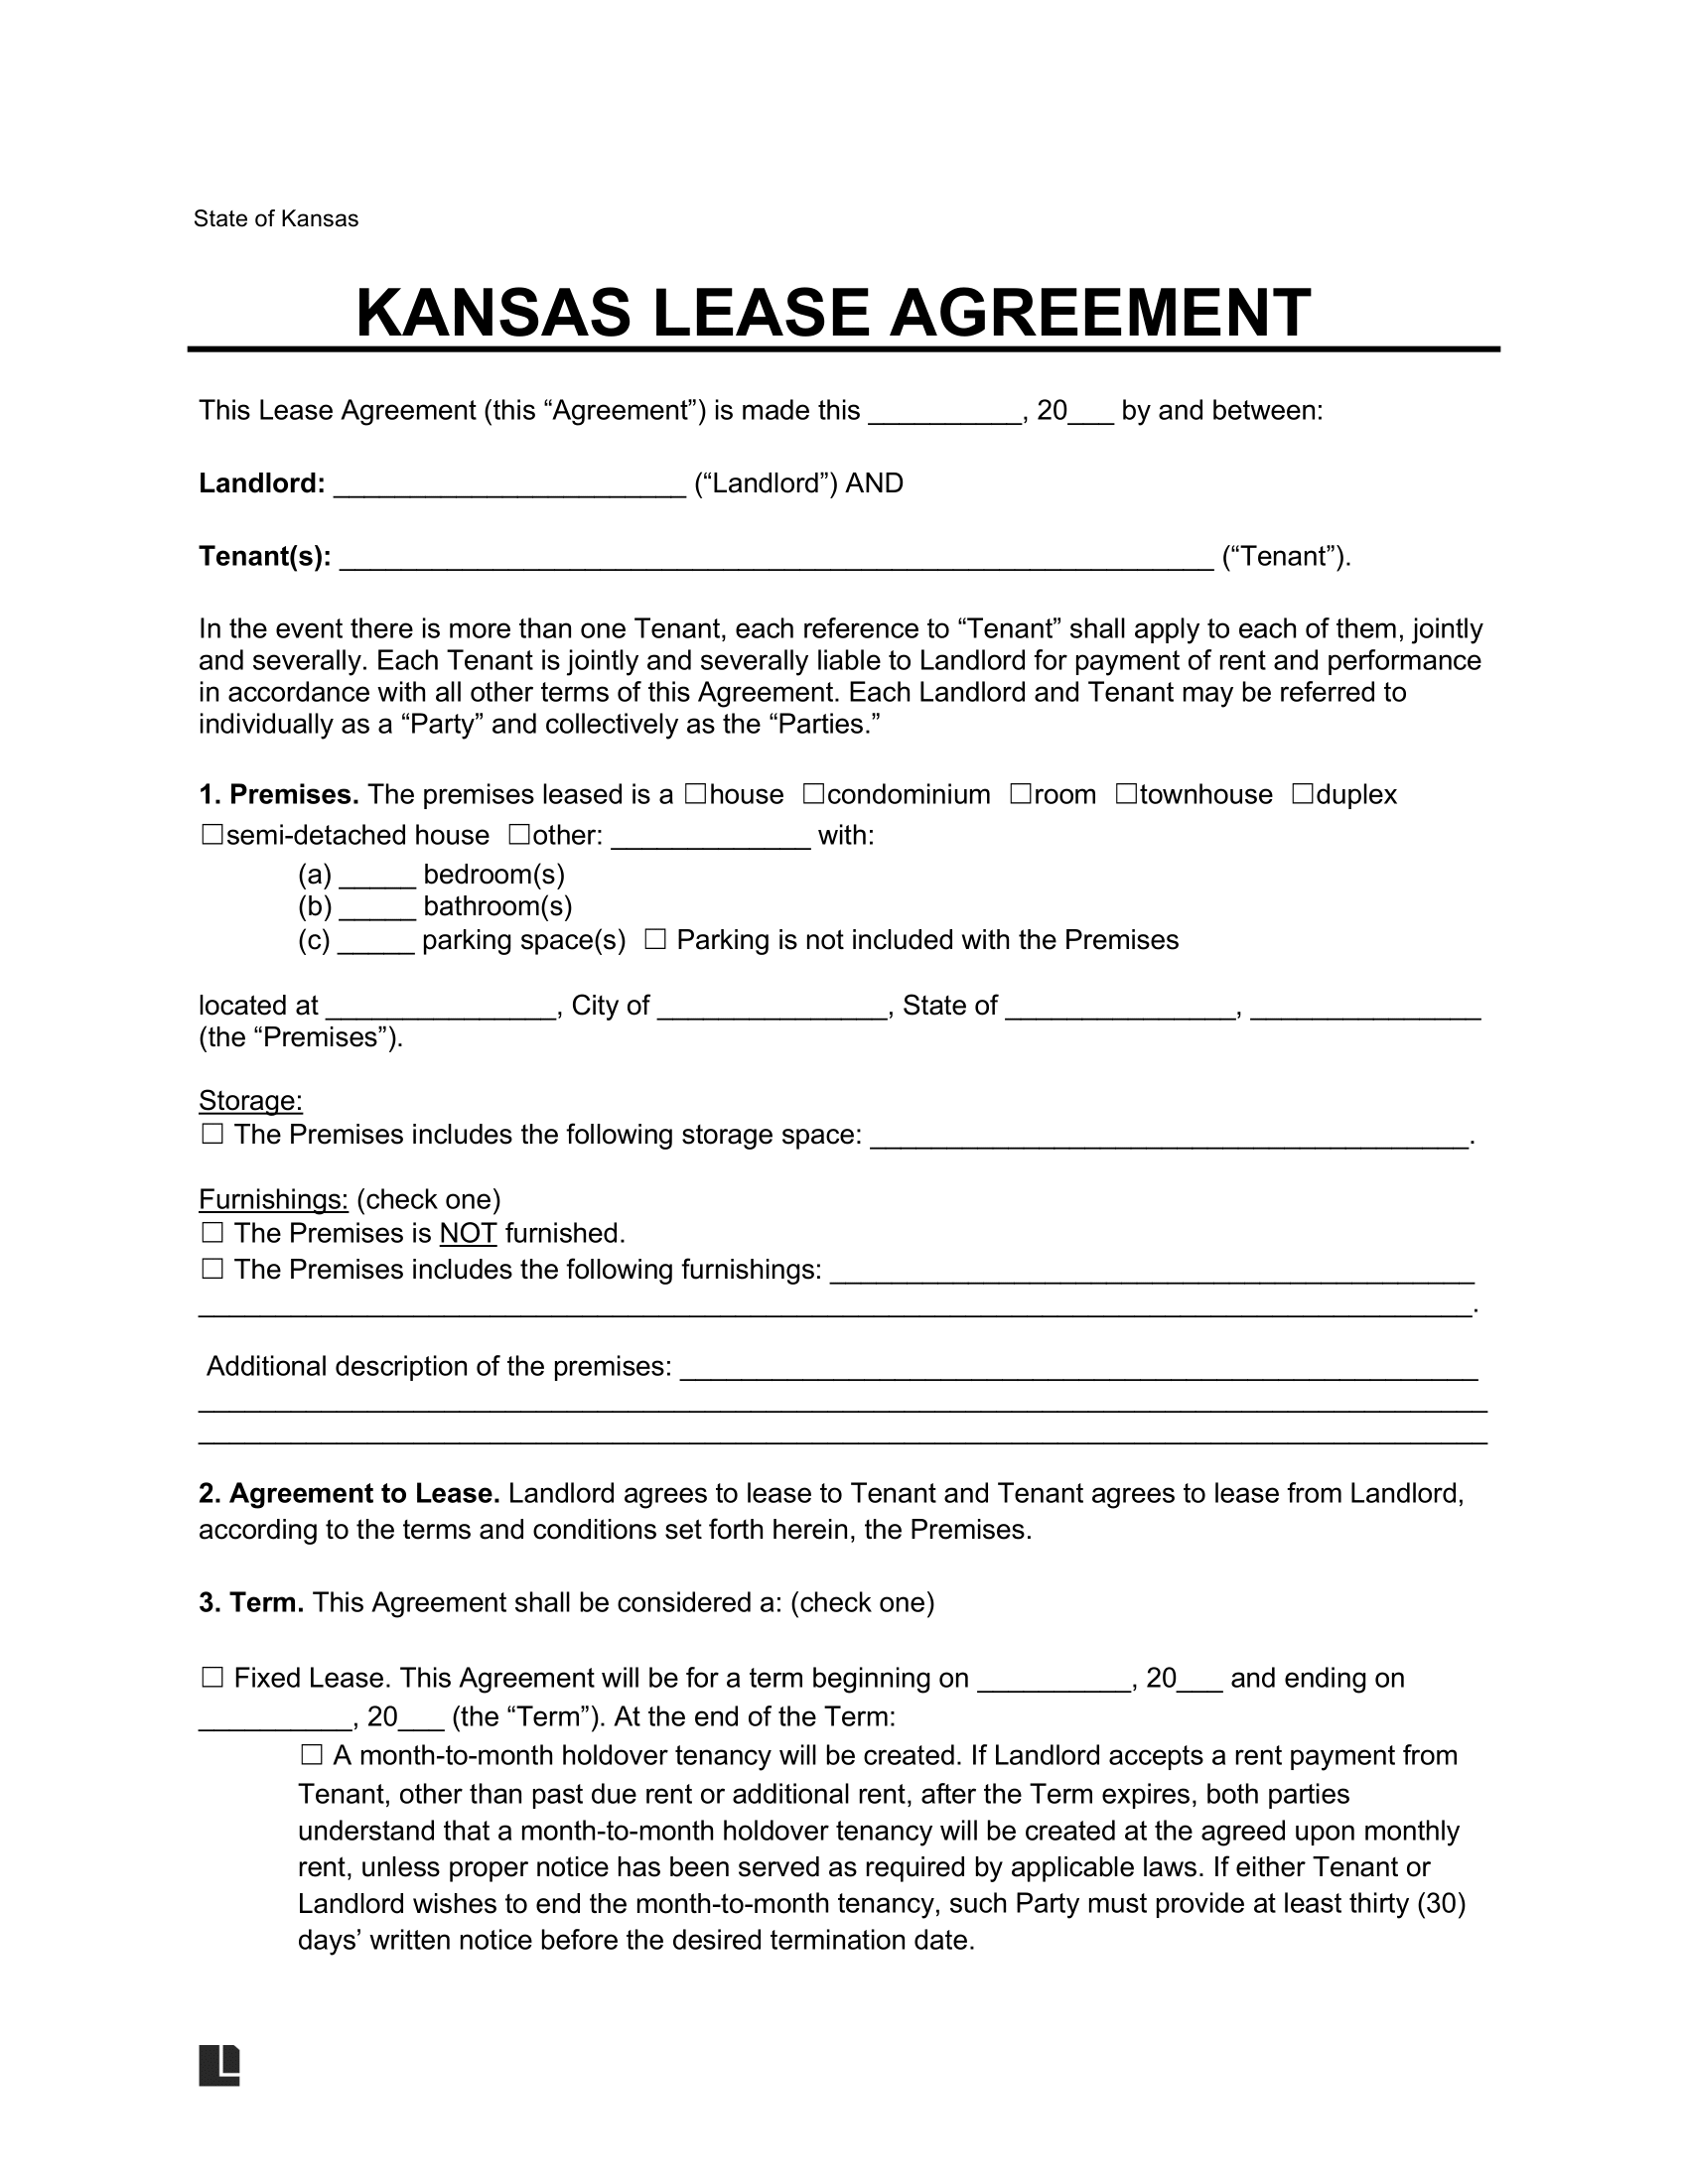 kansas residential lease agreement